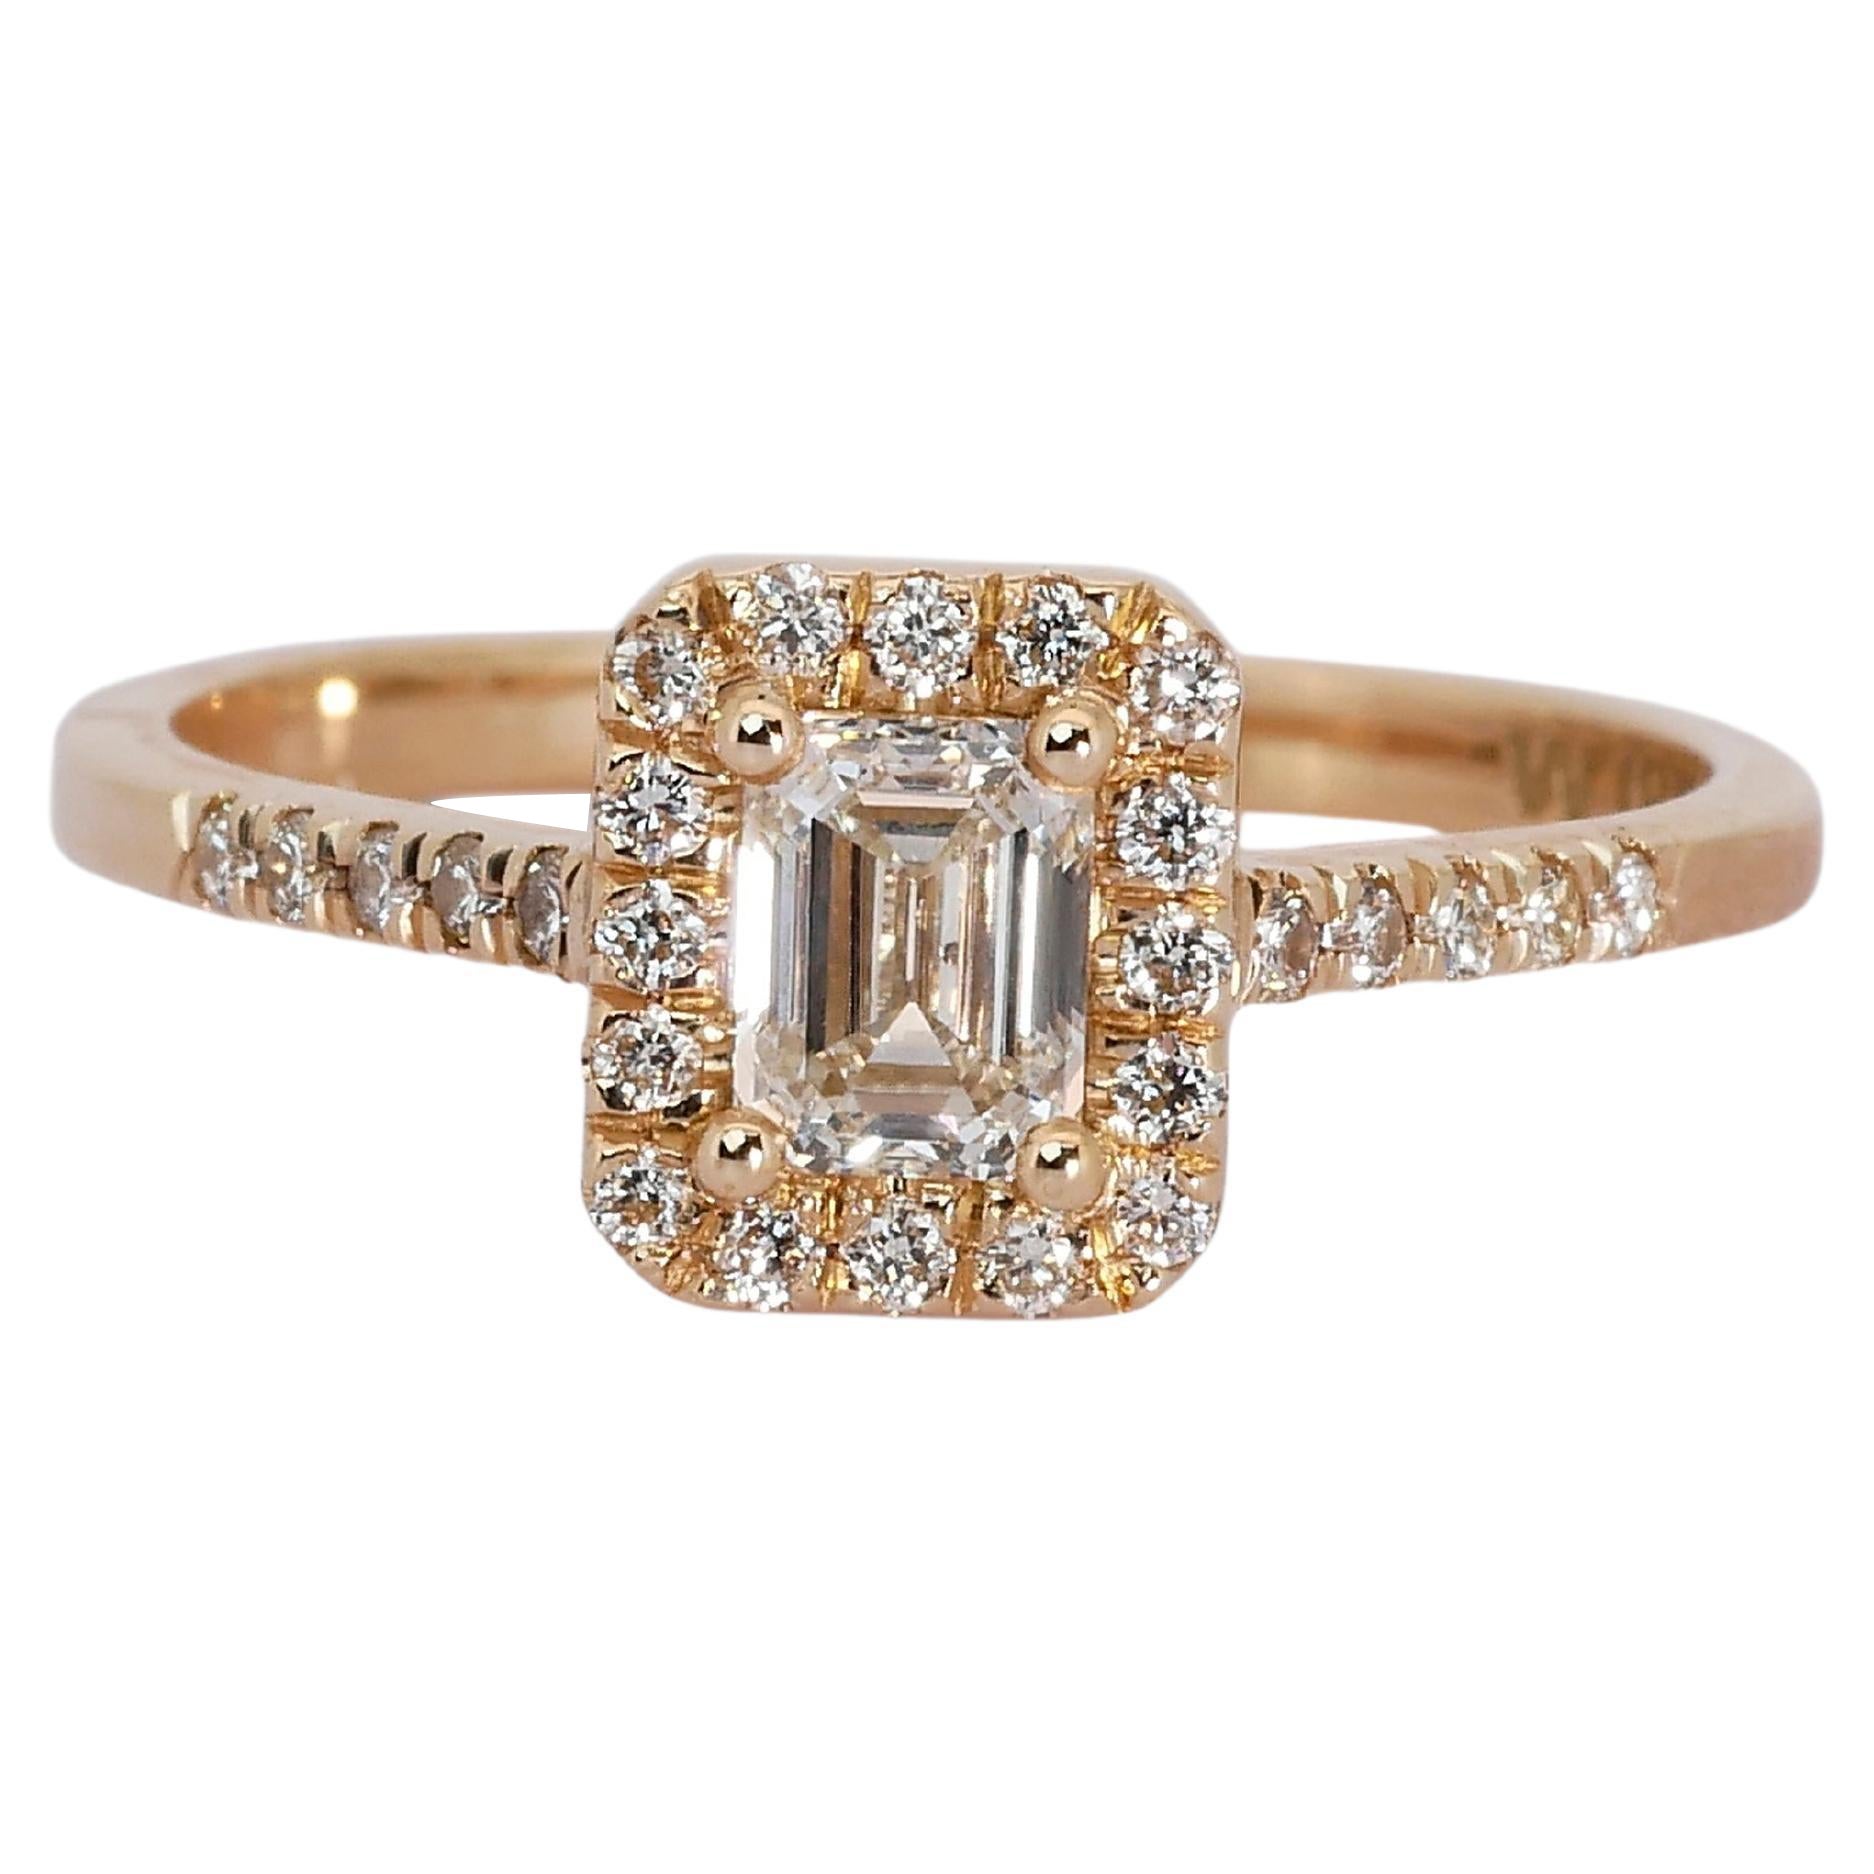 Ravishing 18k Rose Gold Halo Ring w/ 0.84 Carat Natural Diamonds IGI Cert